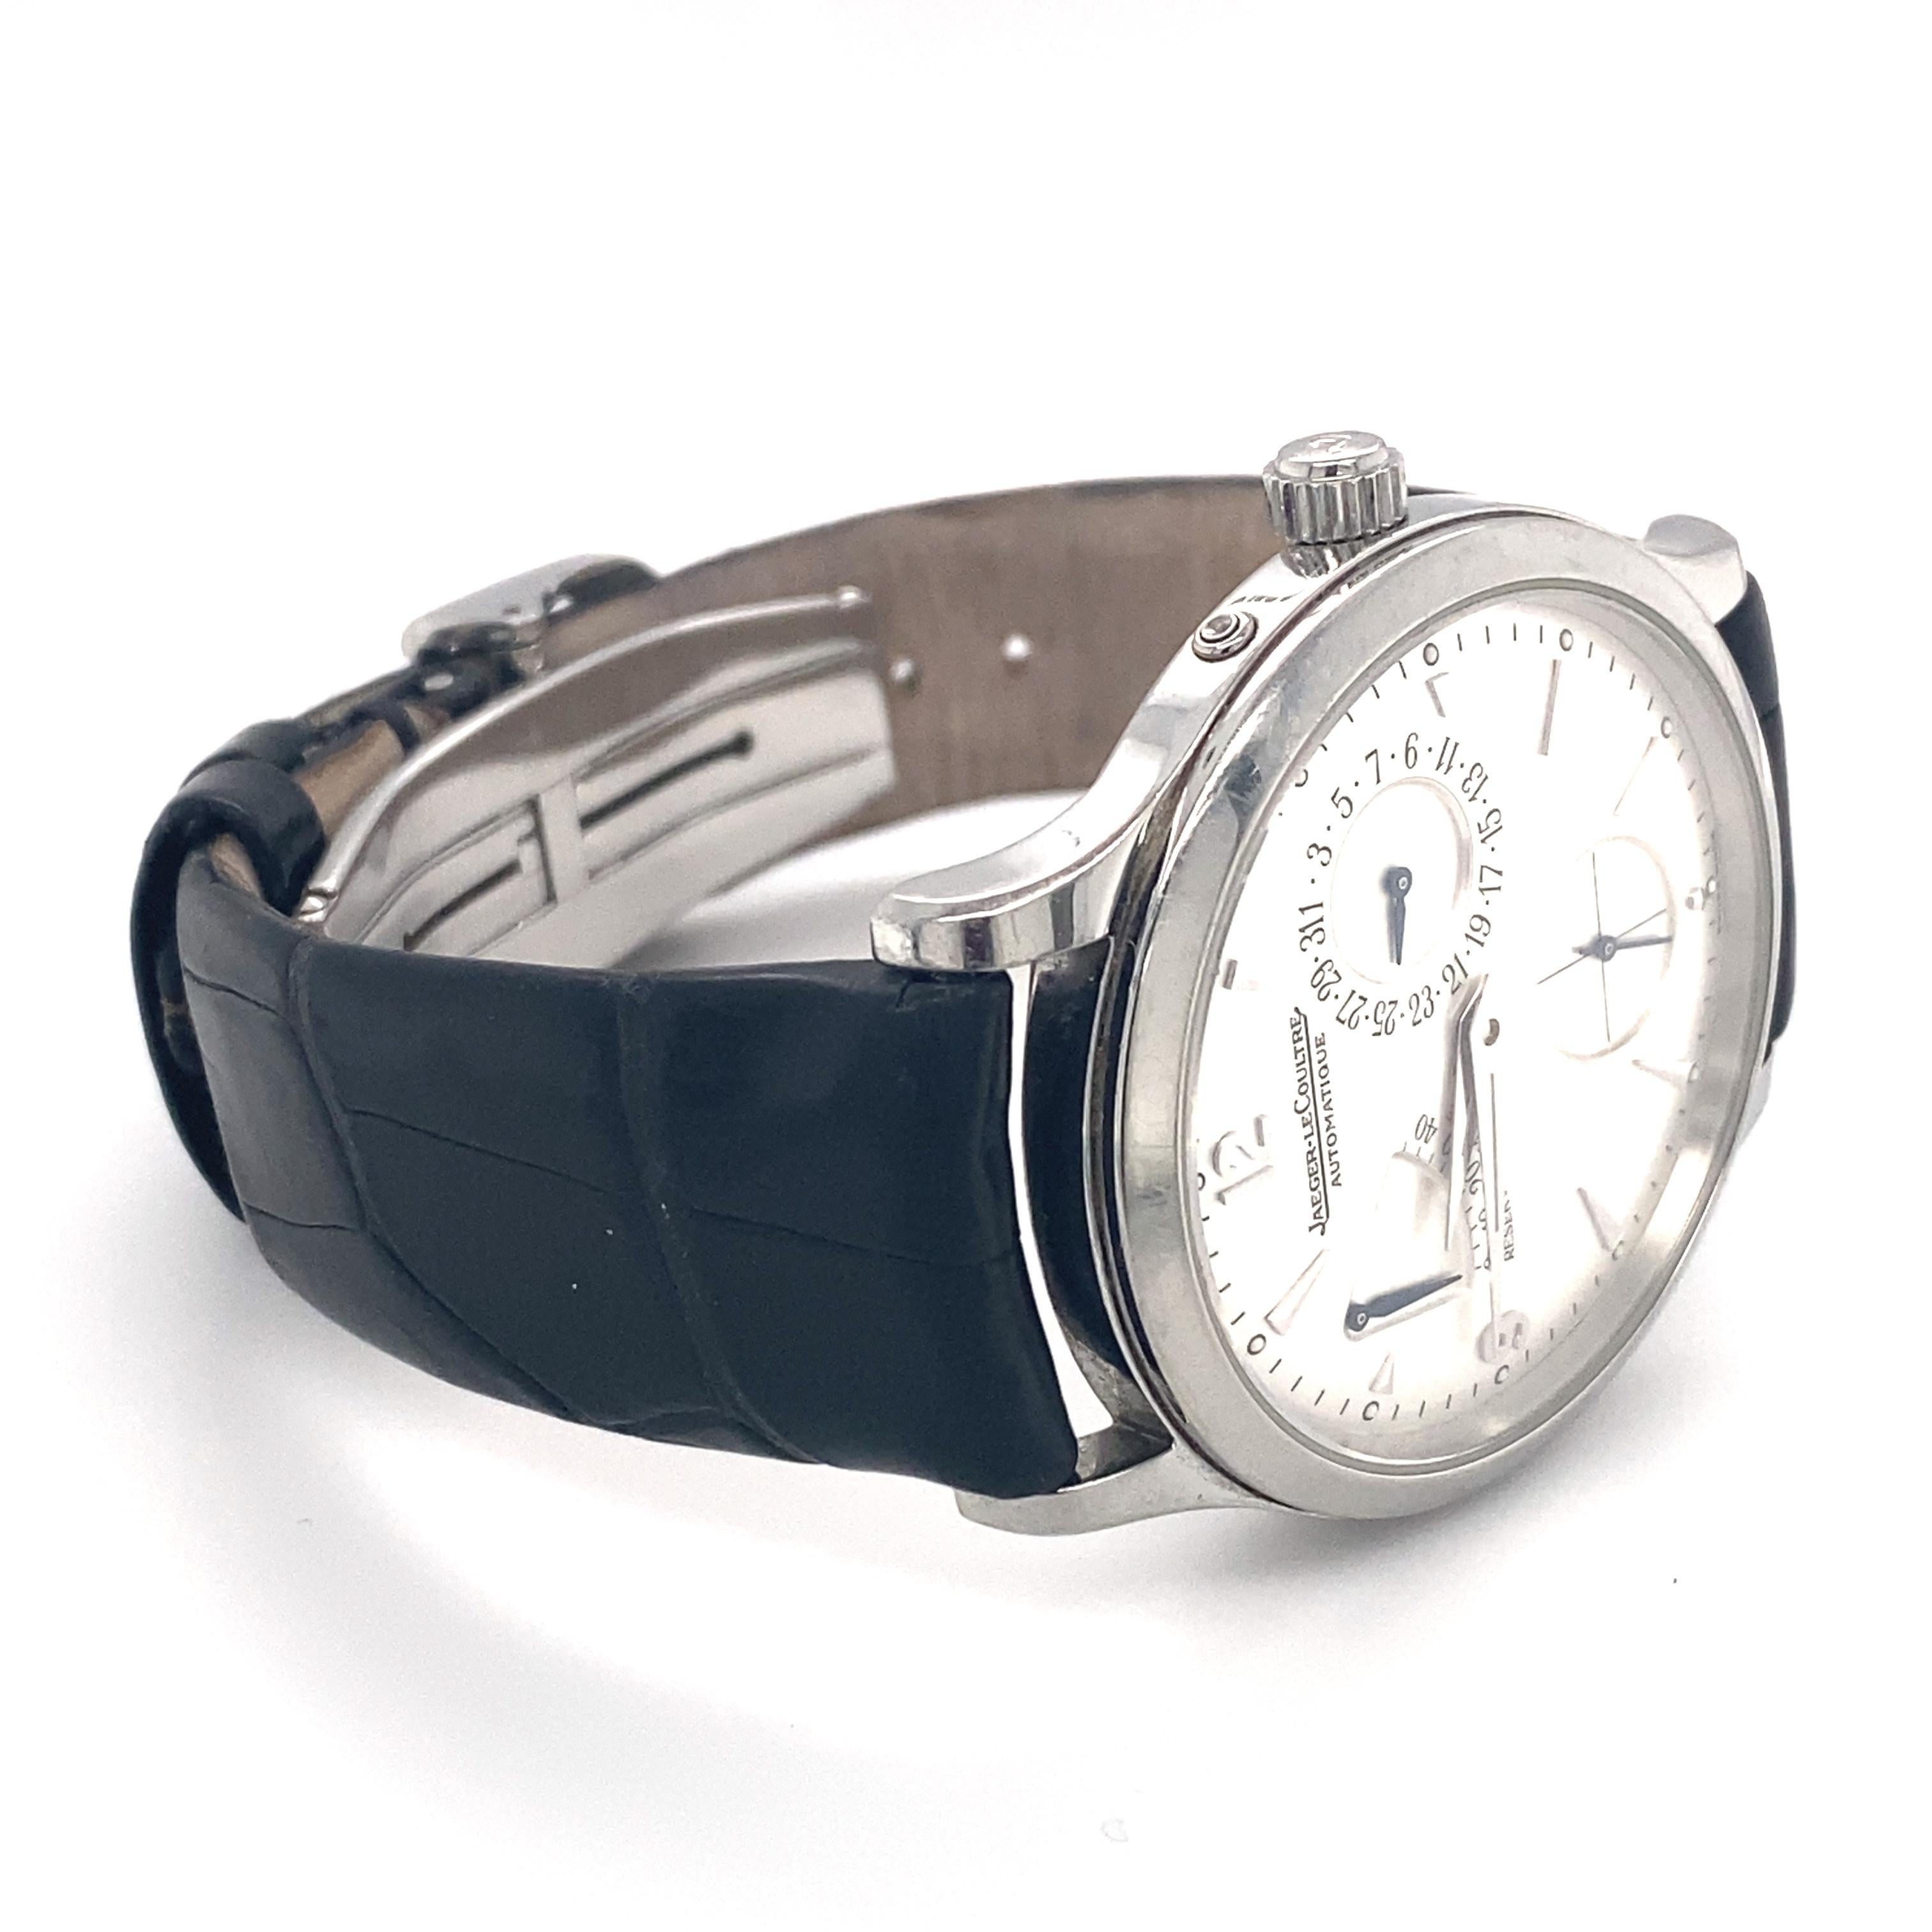 Cette montre-bracelet pour homme de Jaeger-LeCoultre est le modèle Master Ultra Thin, de bonne qualité avec un bracelet d'occasion. La bande peut être remplacée sur demande.

Type de métal : Acier inoxydable
Dimensions : Boîtier 39mm, longueur du